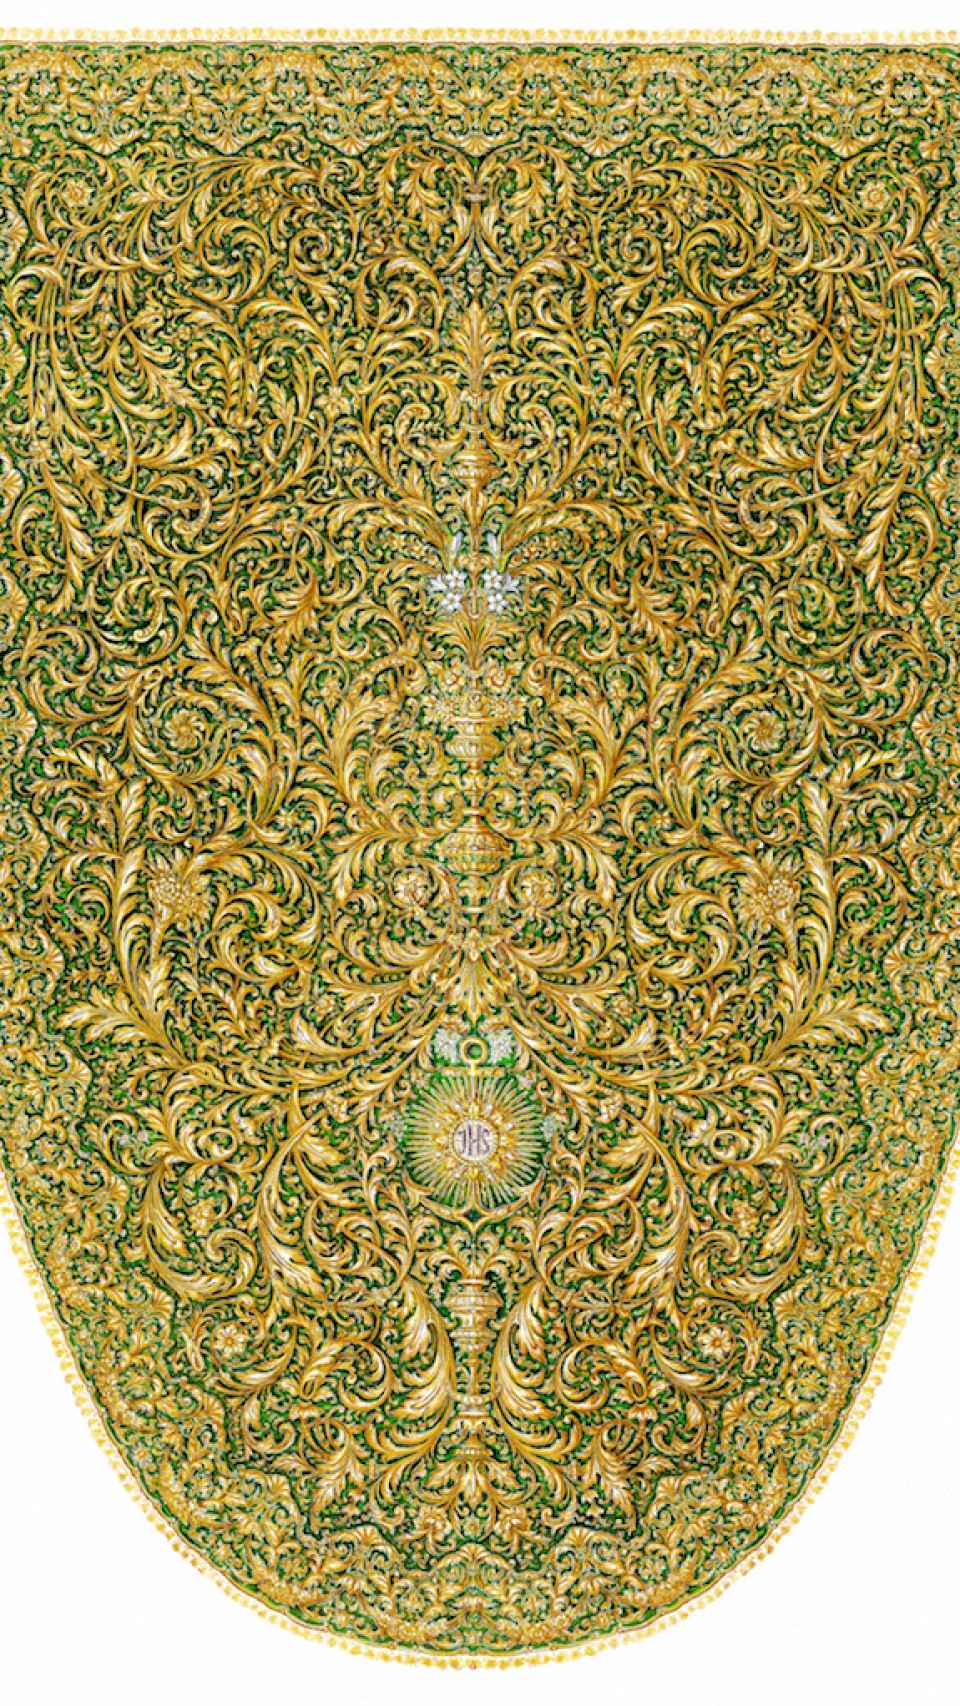 Diseño de manto de Javier Sánchez de los Reyes.